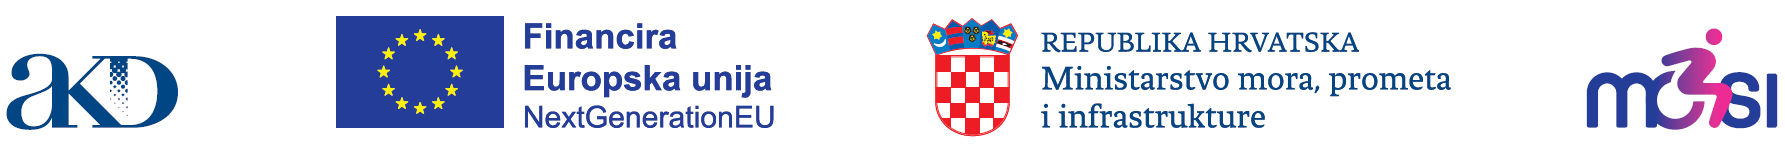 Hrvatska predvodnica EU-a u području javnih isprava za osobe s invaliditetom